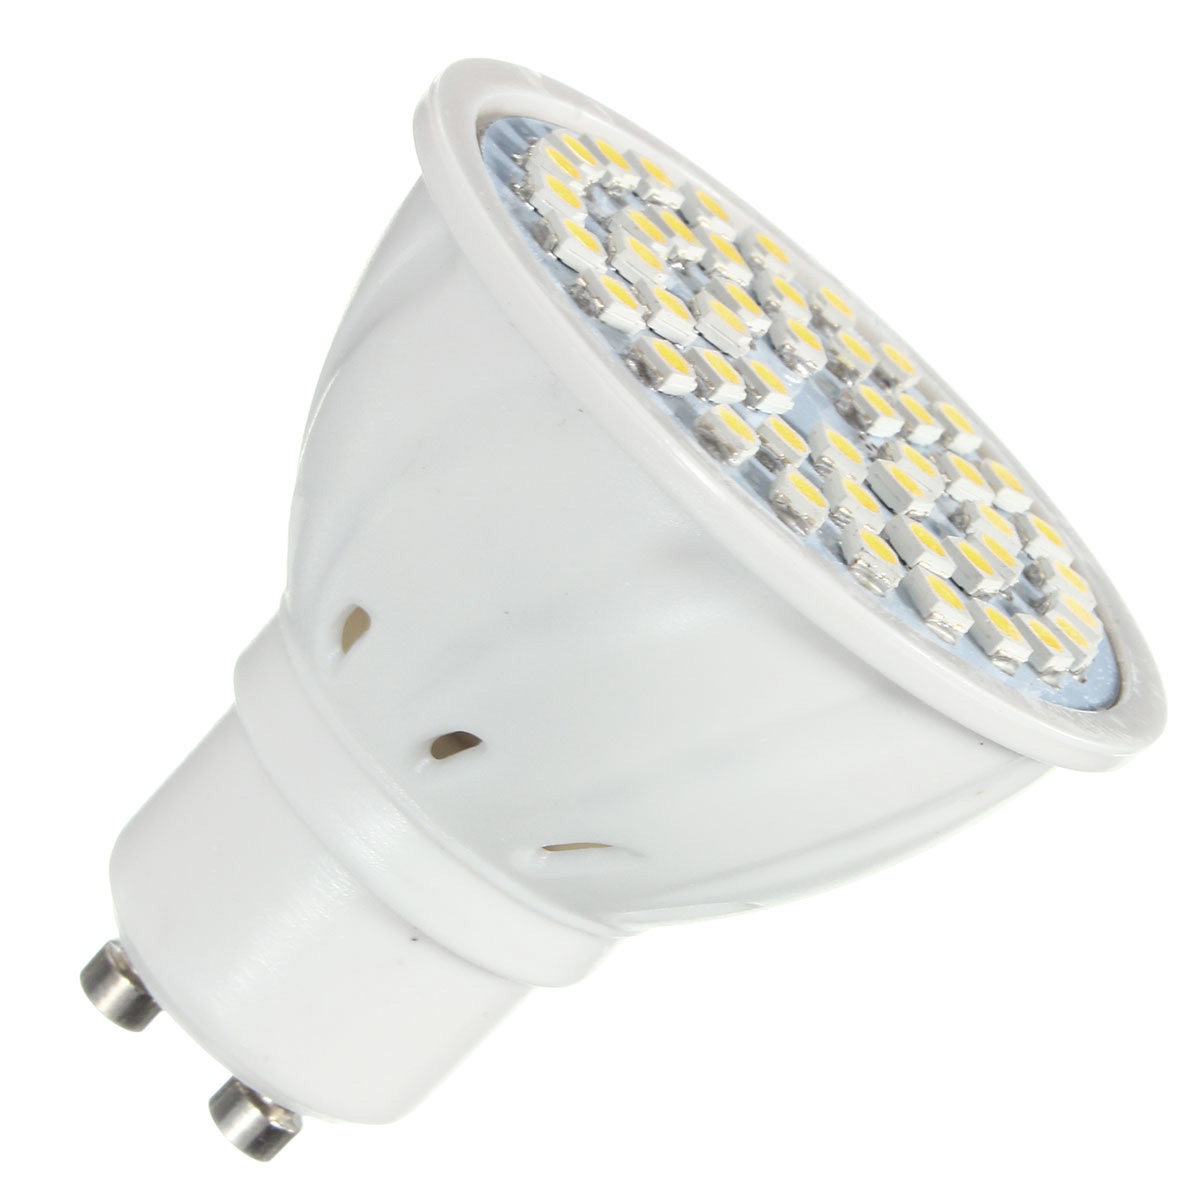 ZX-E27-E14-GU10-MR16-LED-4W-48-SMD-3528-LED-Pure-White-Warm-White-Spot-Lightt-Lamp-Bulb-AC110V-AC220-1076565-5